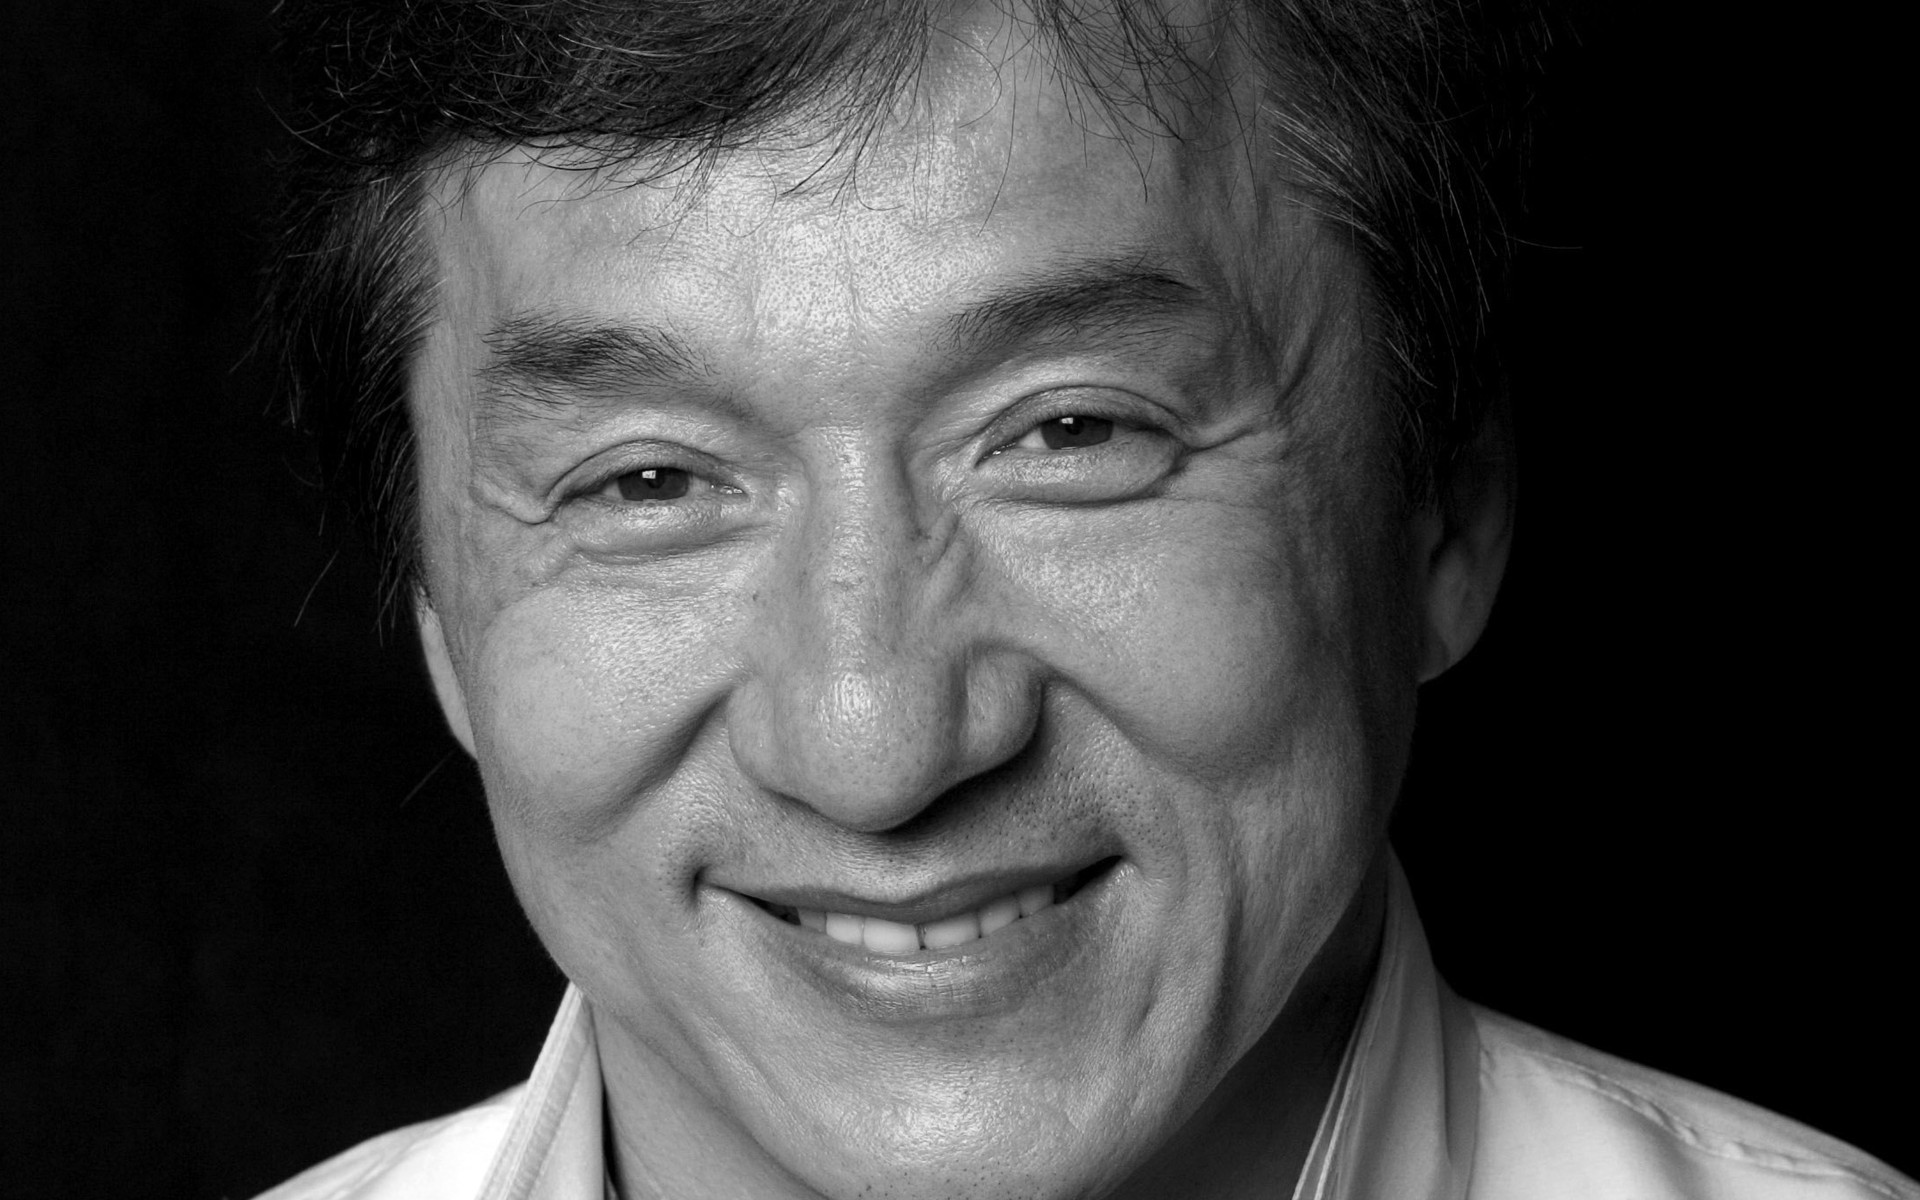 Jackie Chan - Wallpaper Gallery